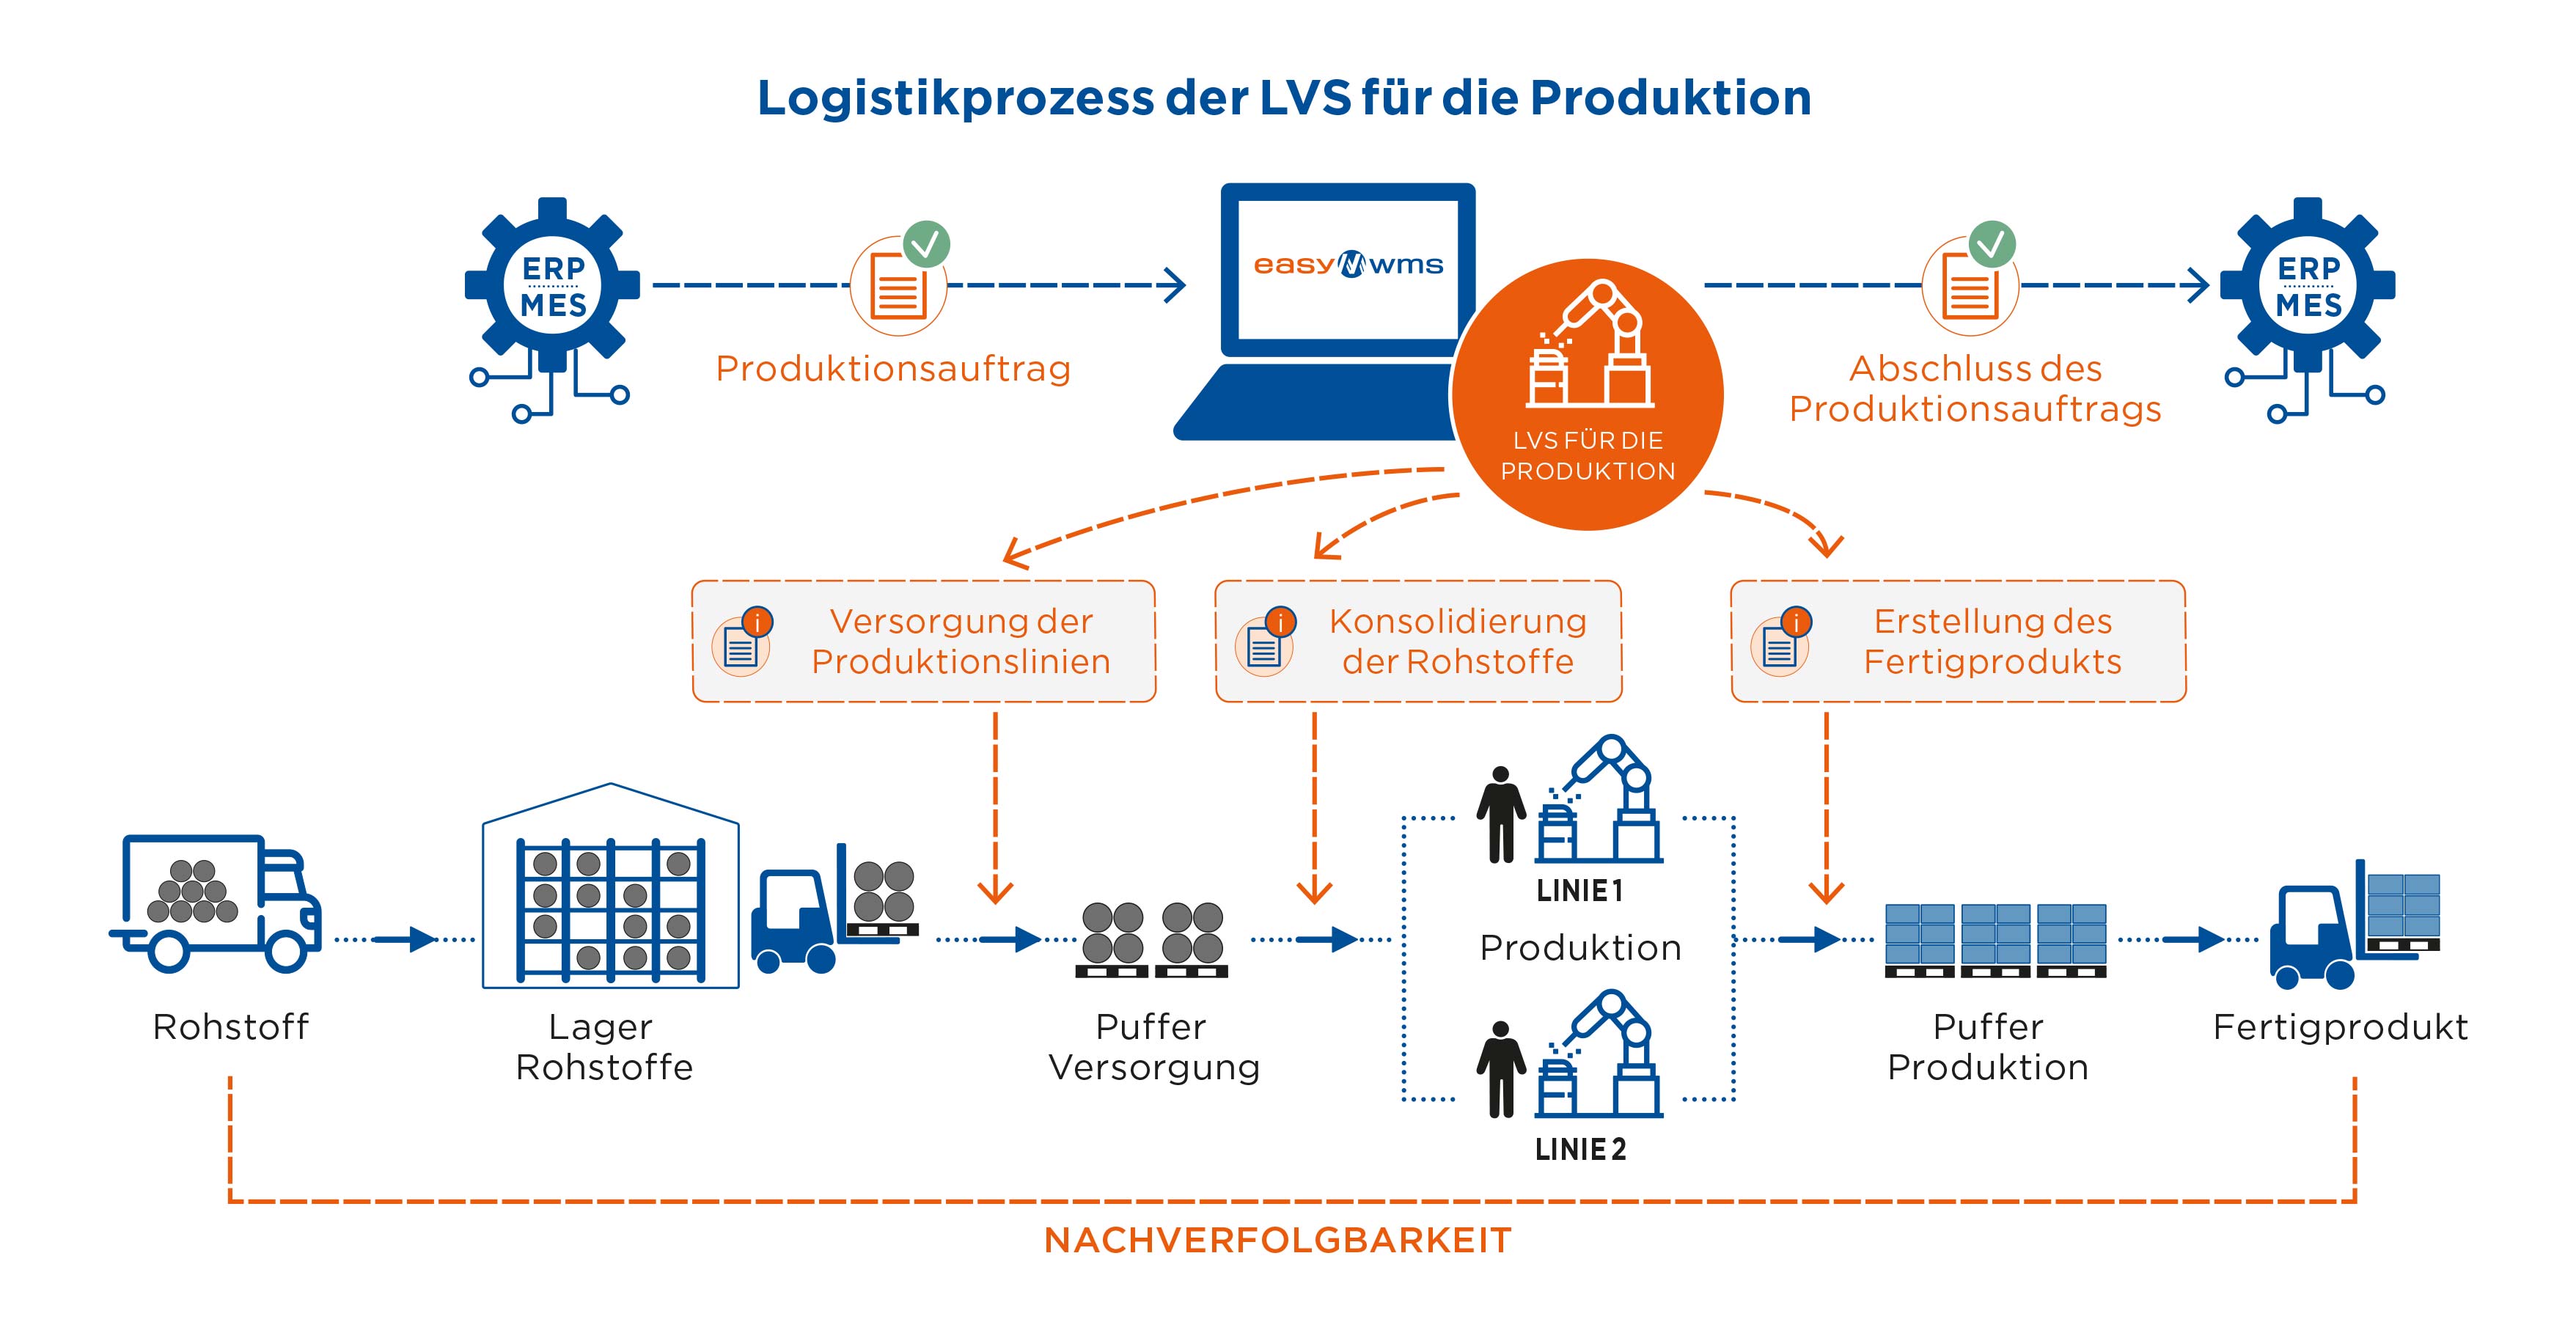 Logistikprozess der LVS für die Produktion